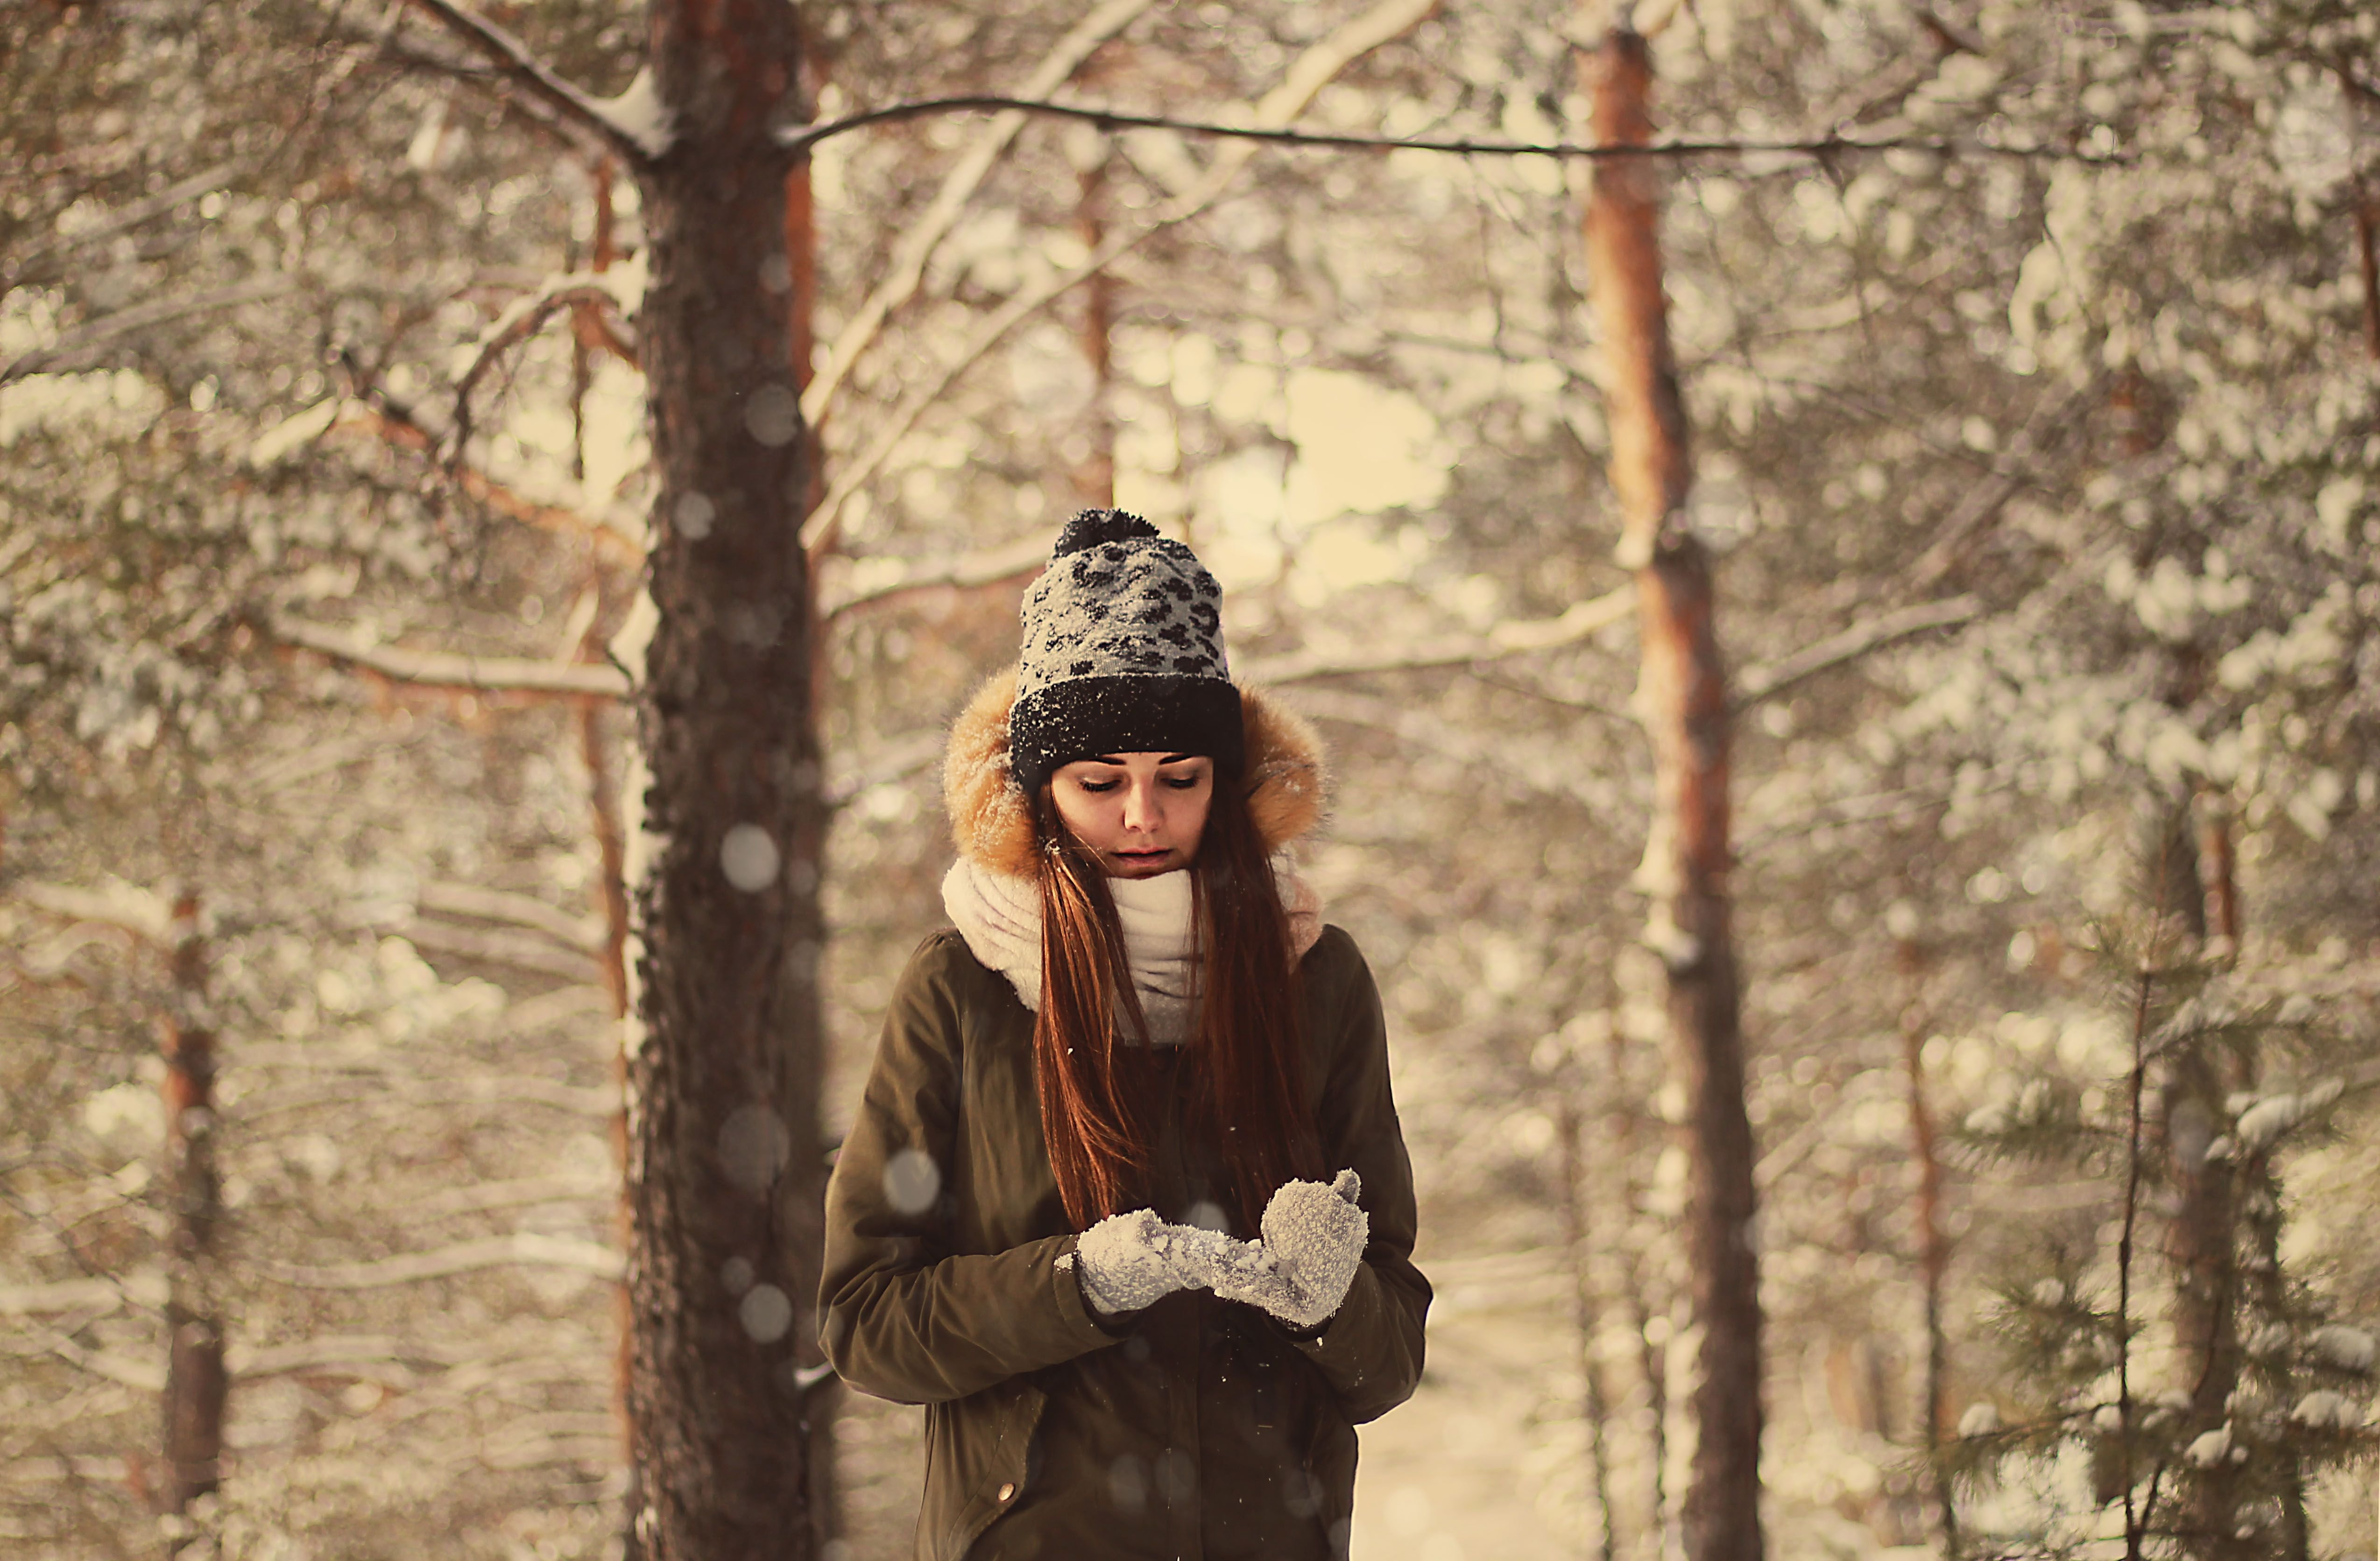 Зимняя фотосессия в лесу